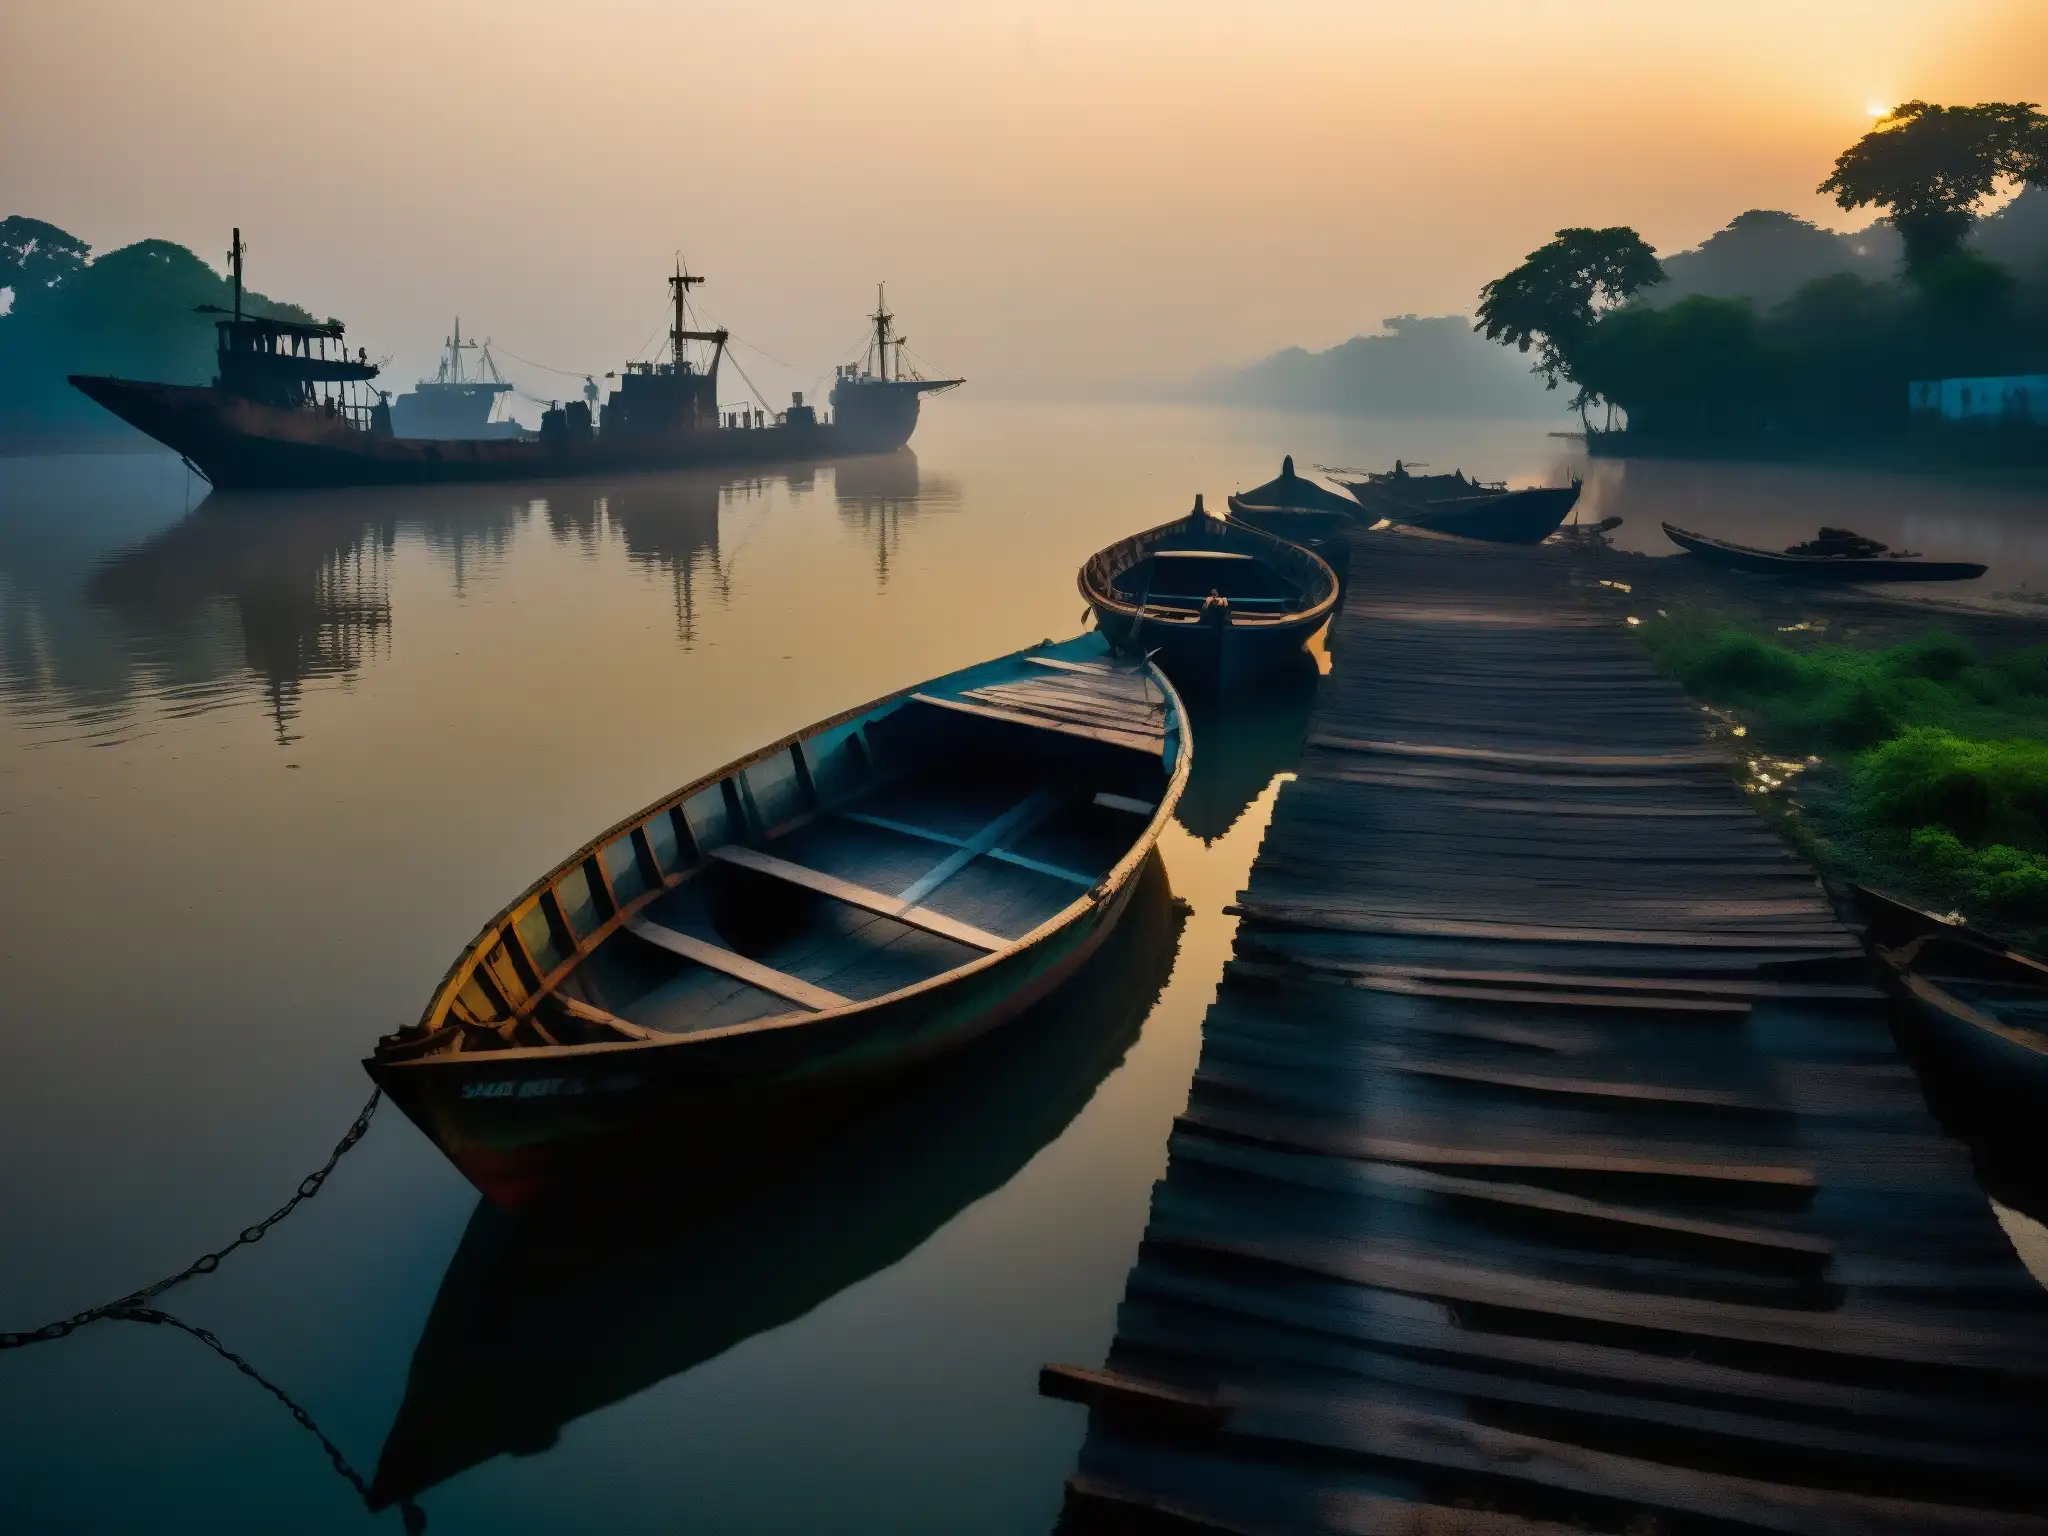 Barcos fantasma emergen en el río Hooghly al atardecer, creando una atmósfera misteriosa y cautivadora